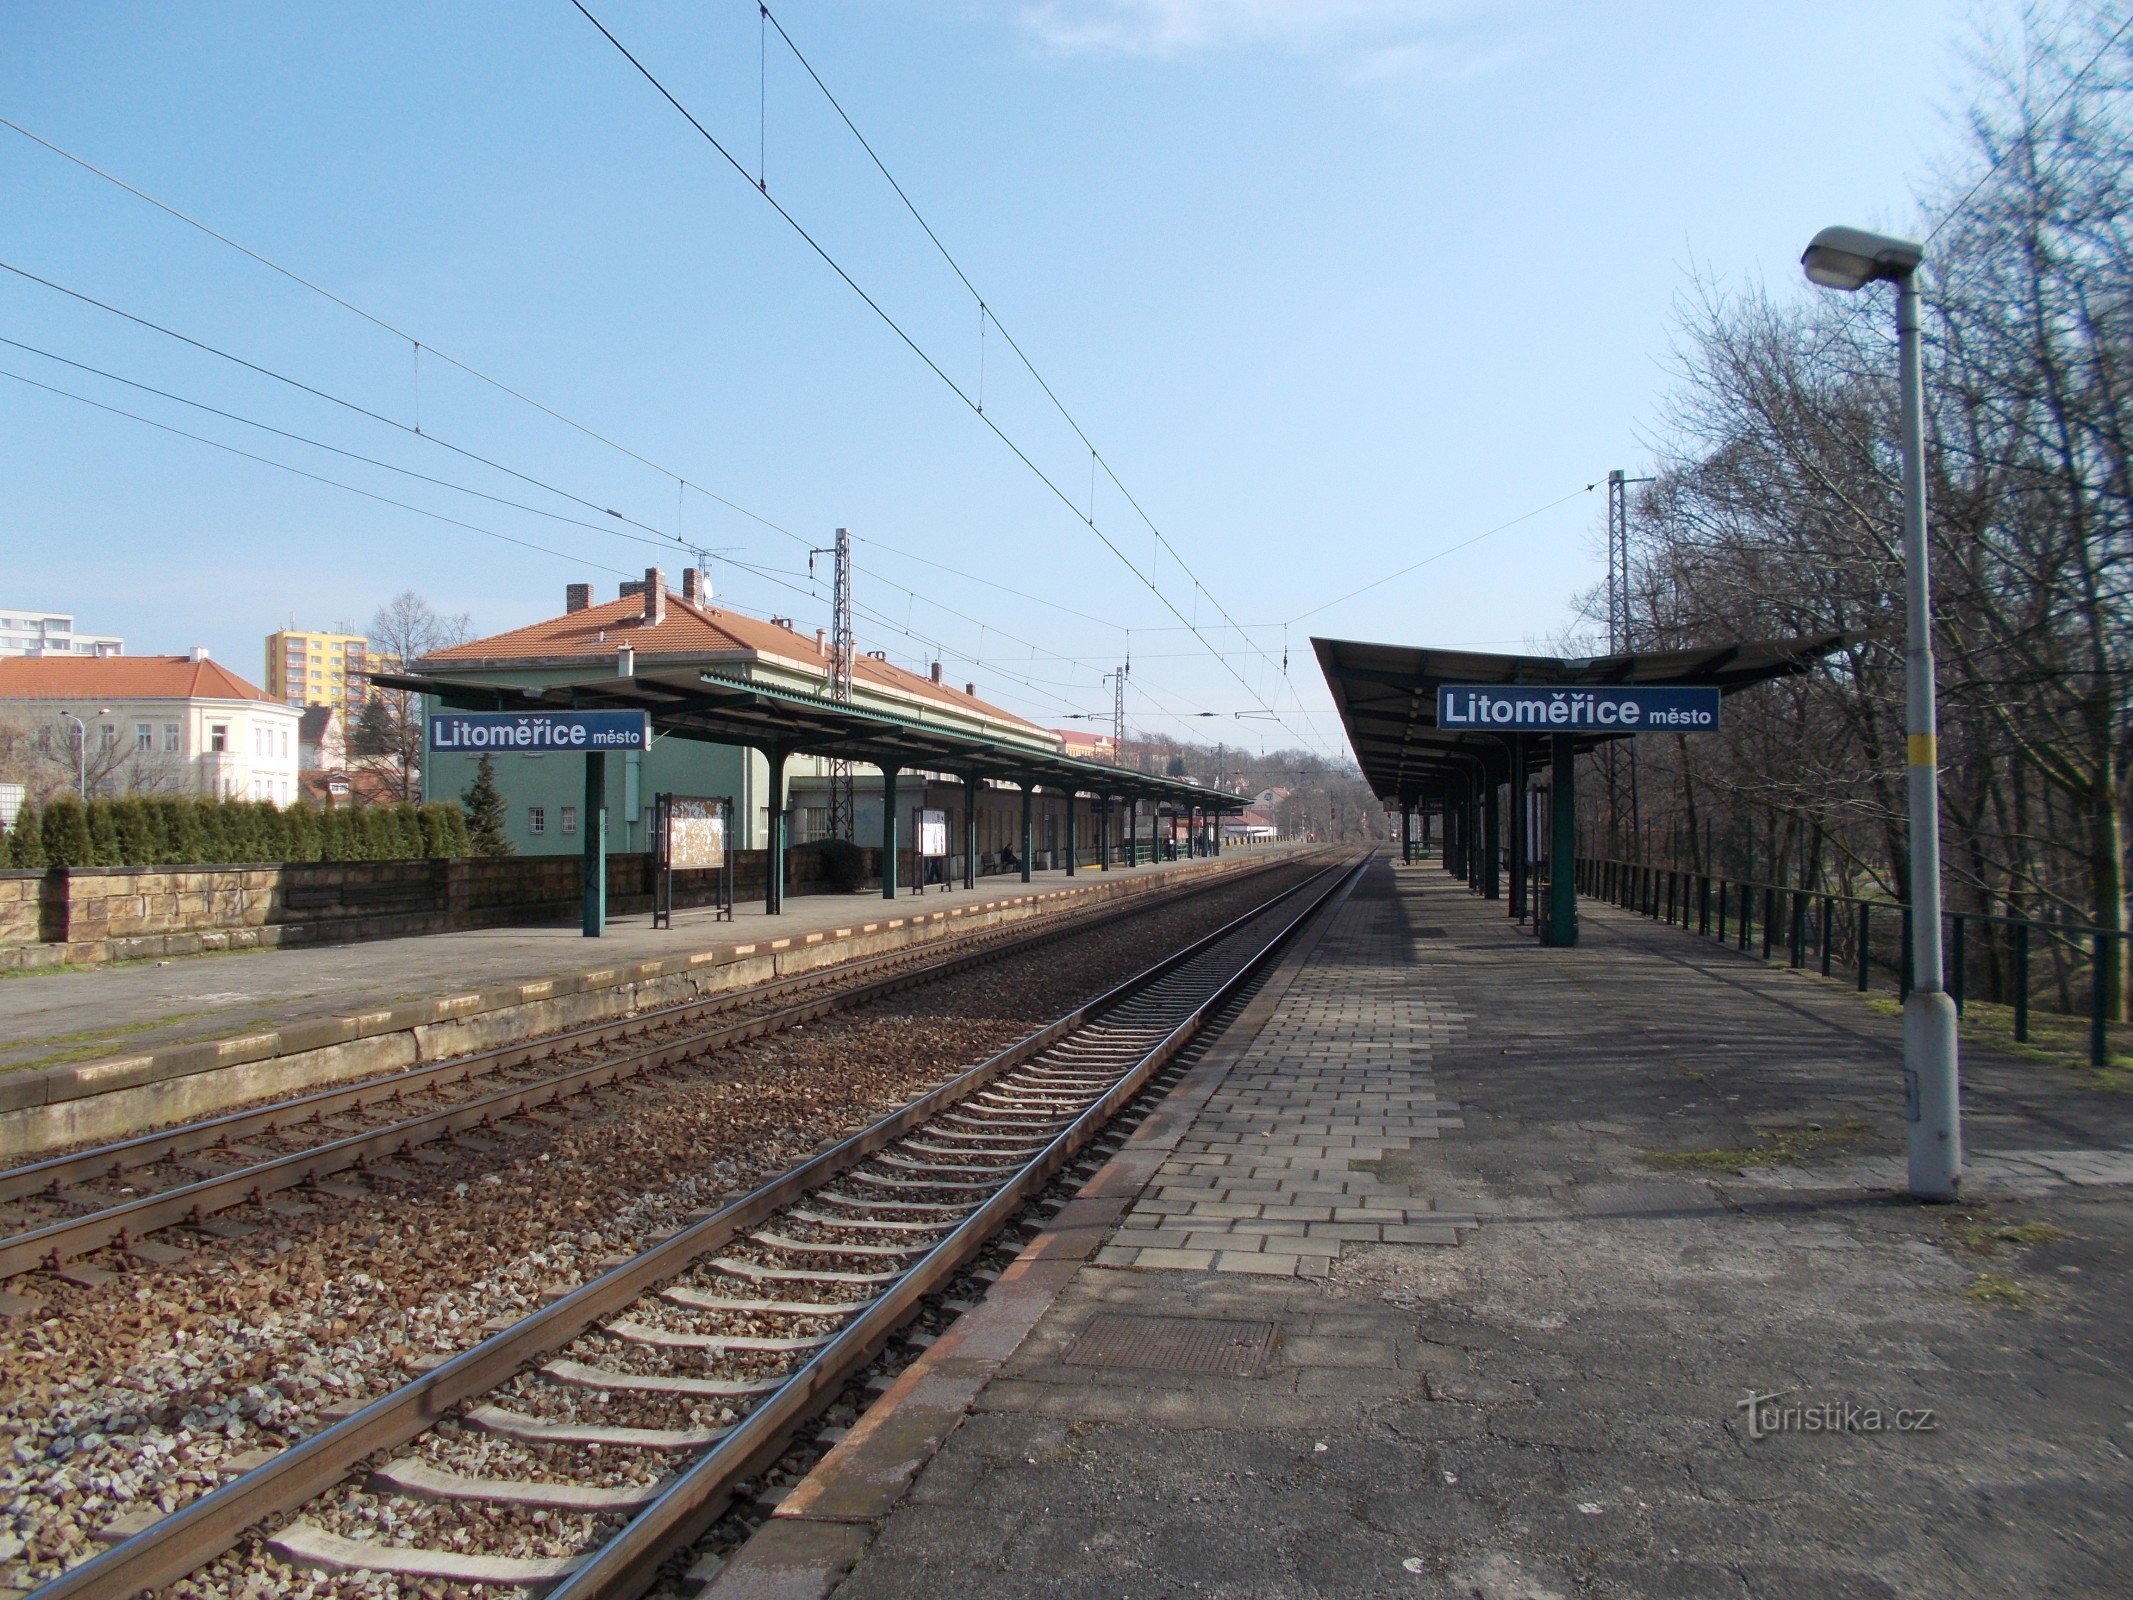 Orașul Litoměřice - gară